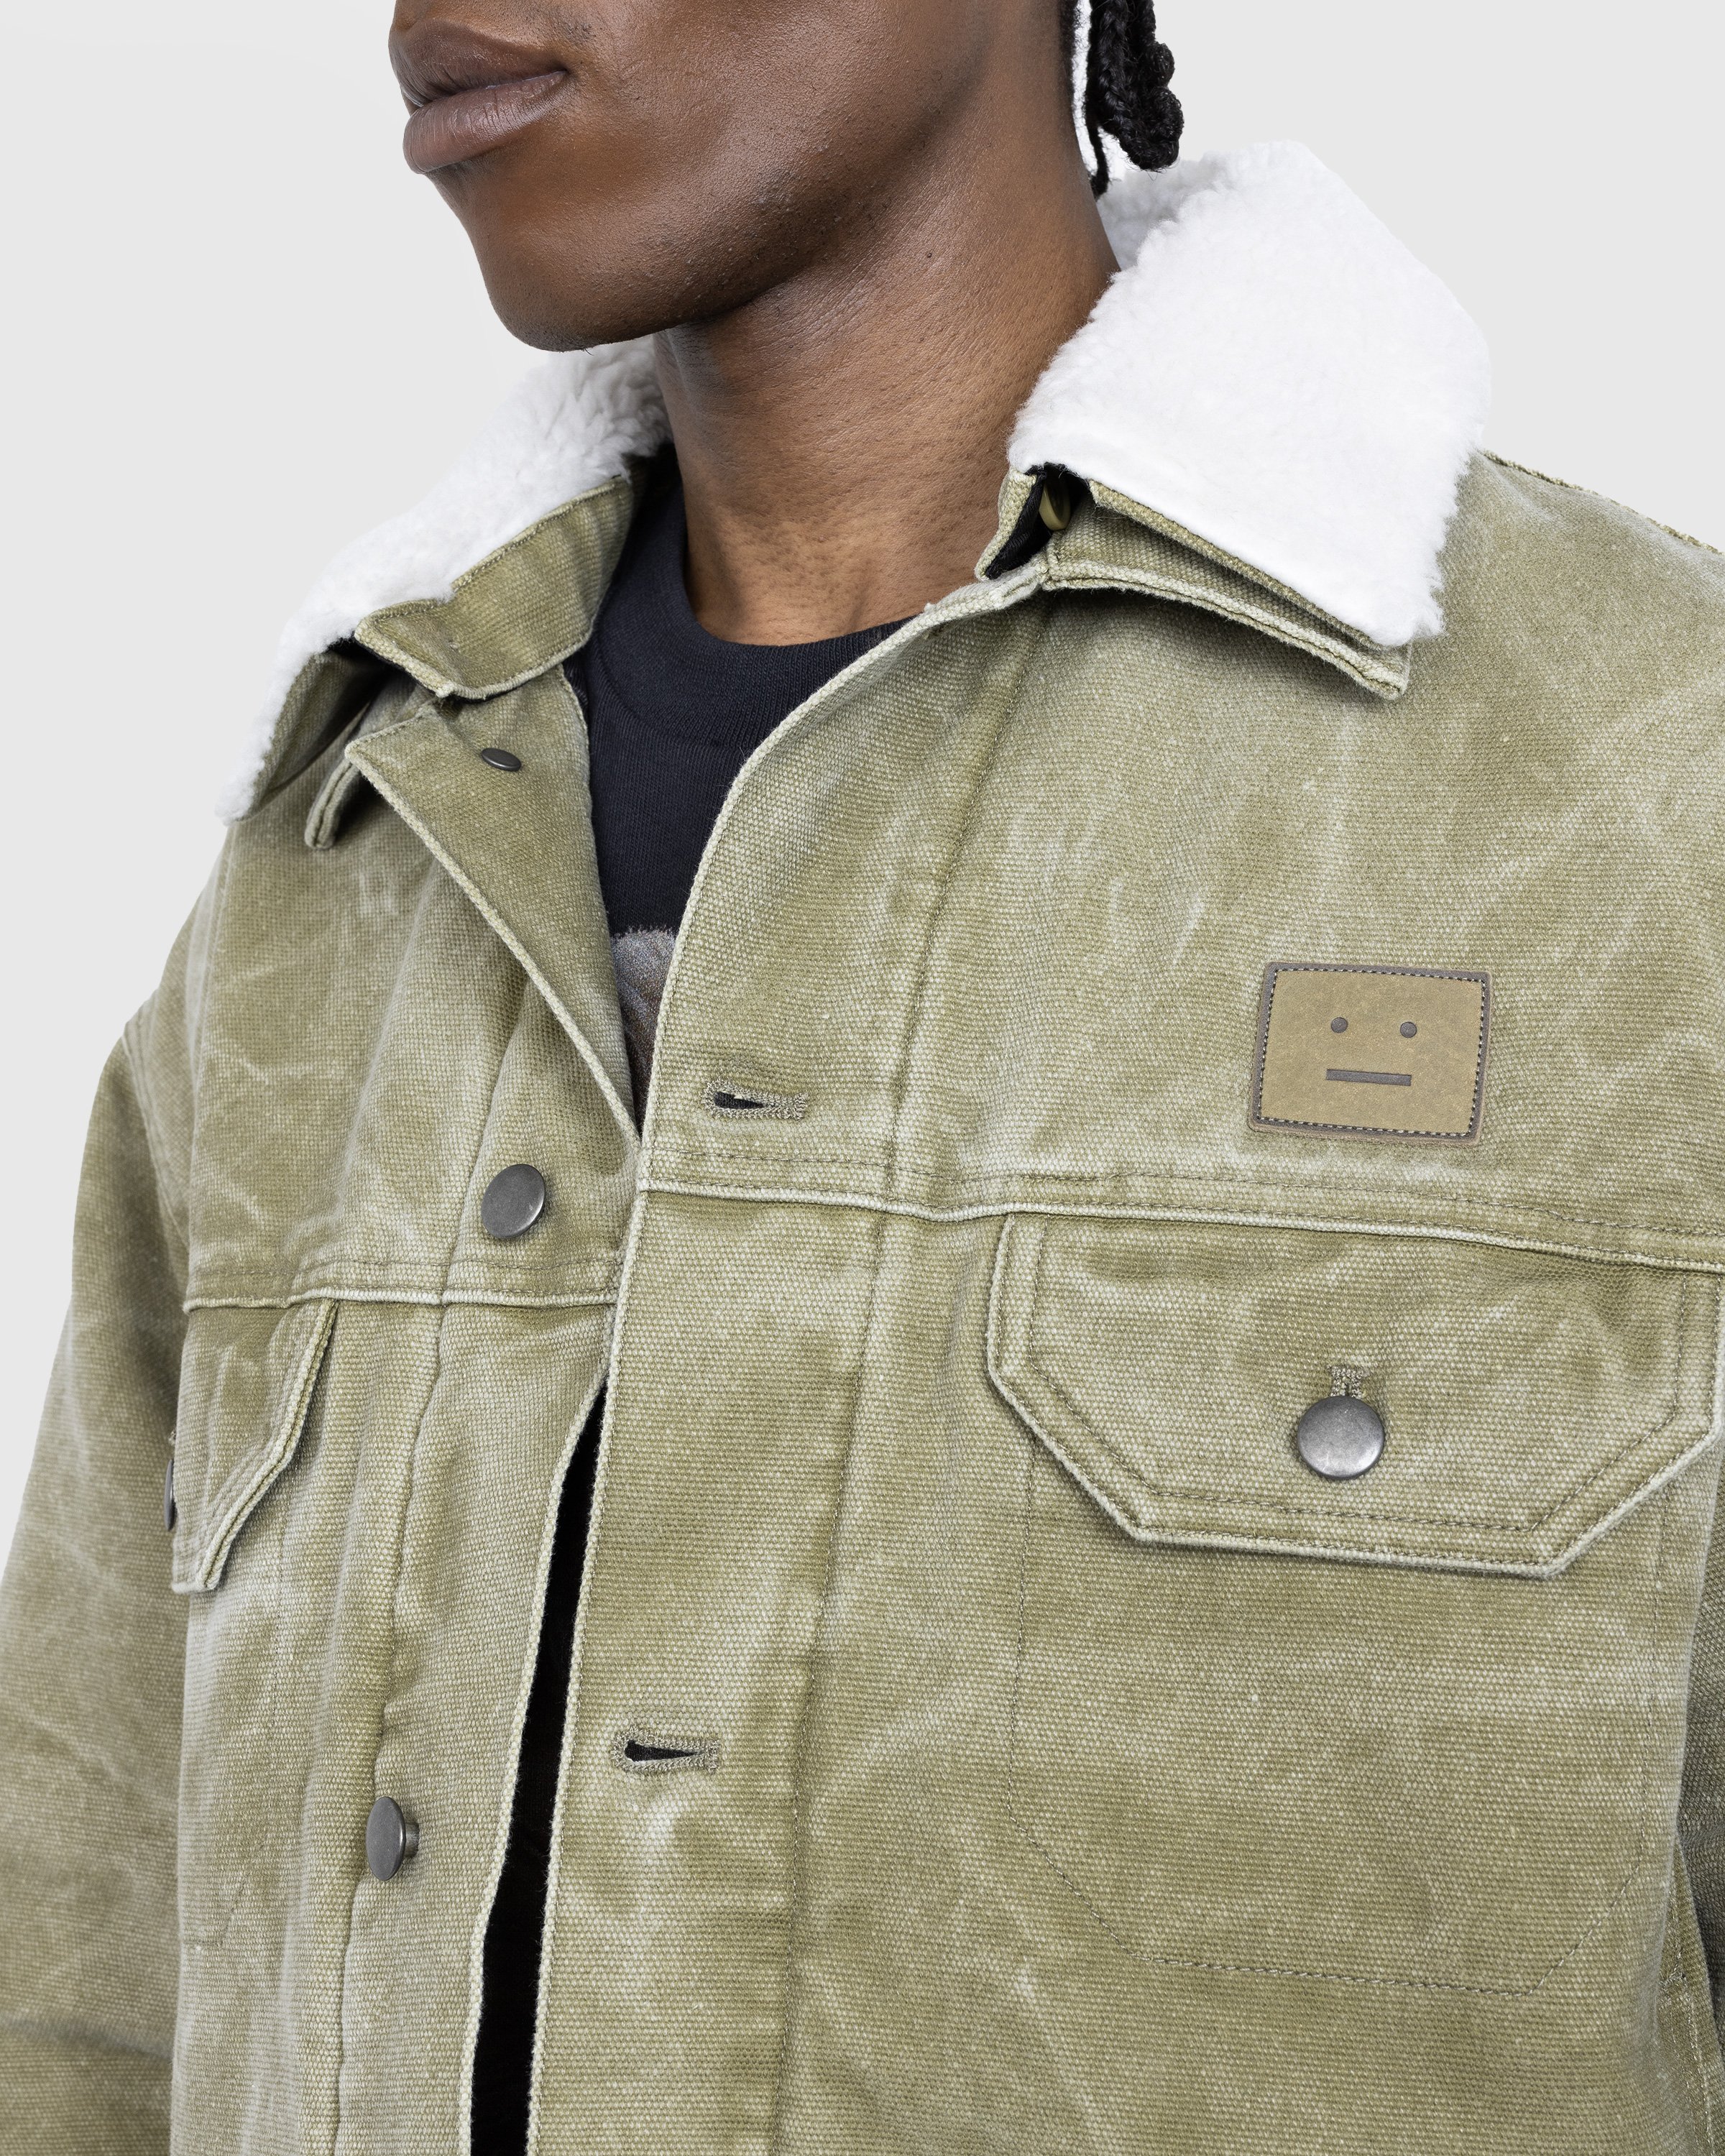 Acne Studios - Canvas Padded Jacket Khaki Beige - Clothing - Green - Image 4